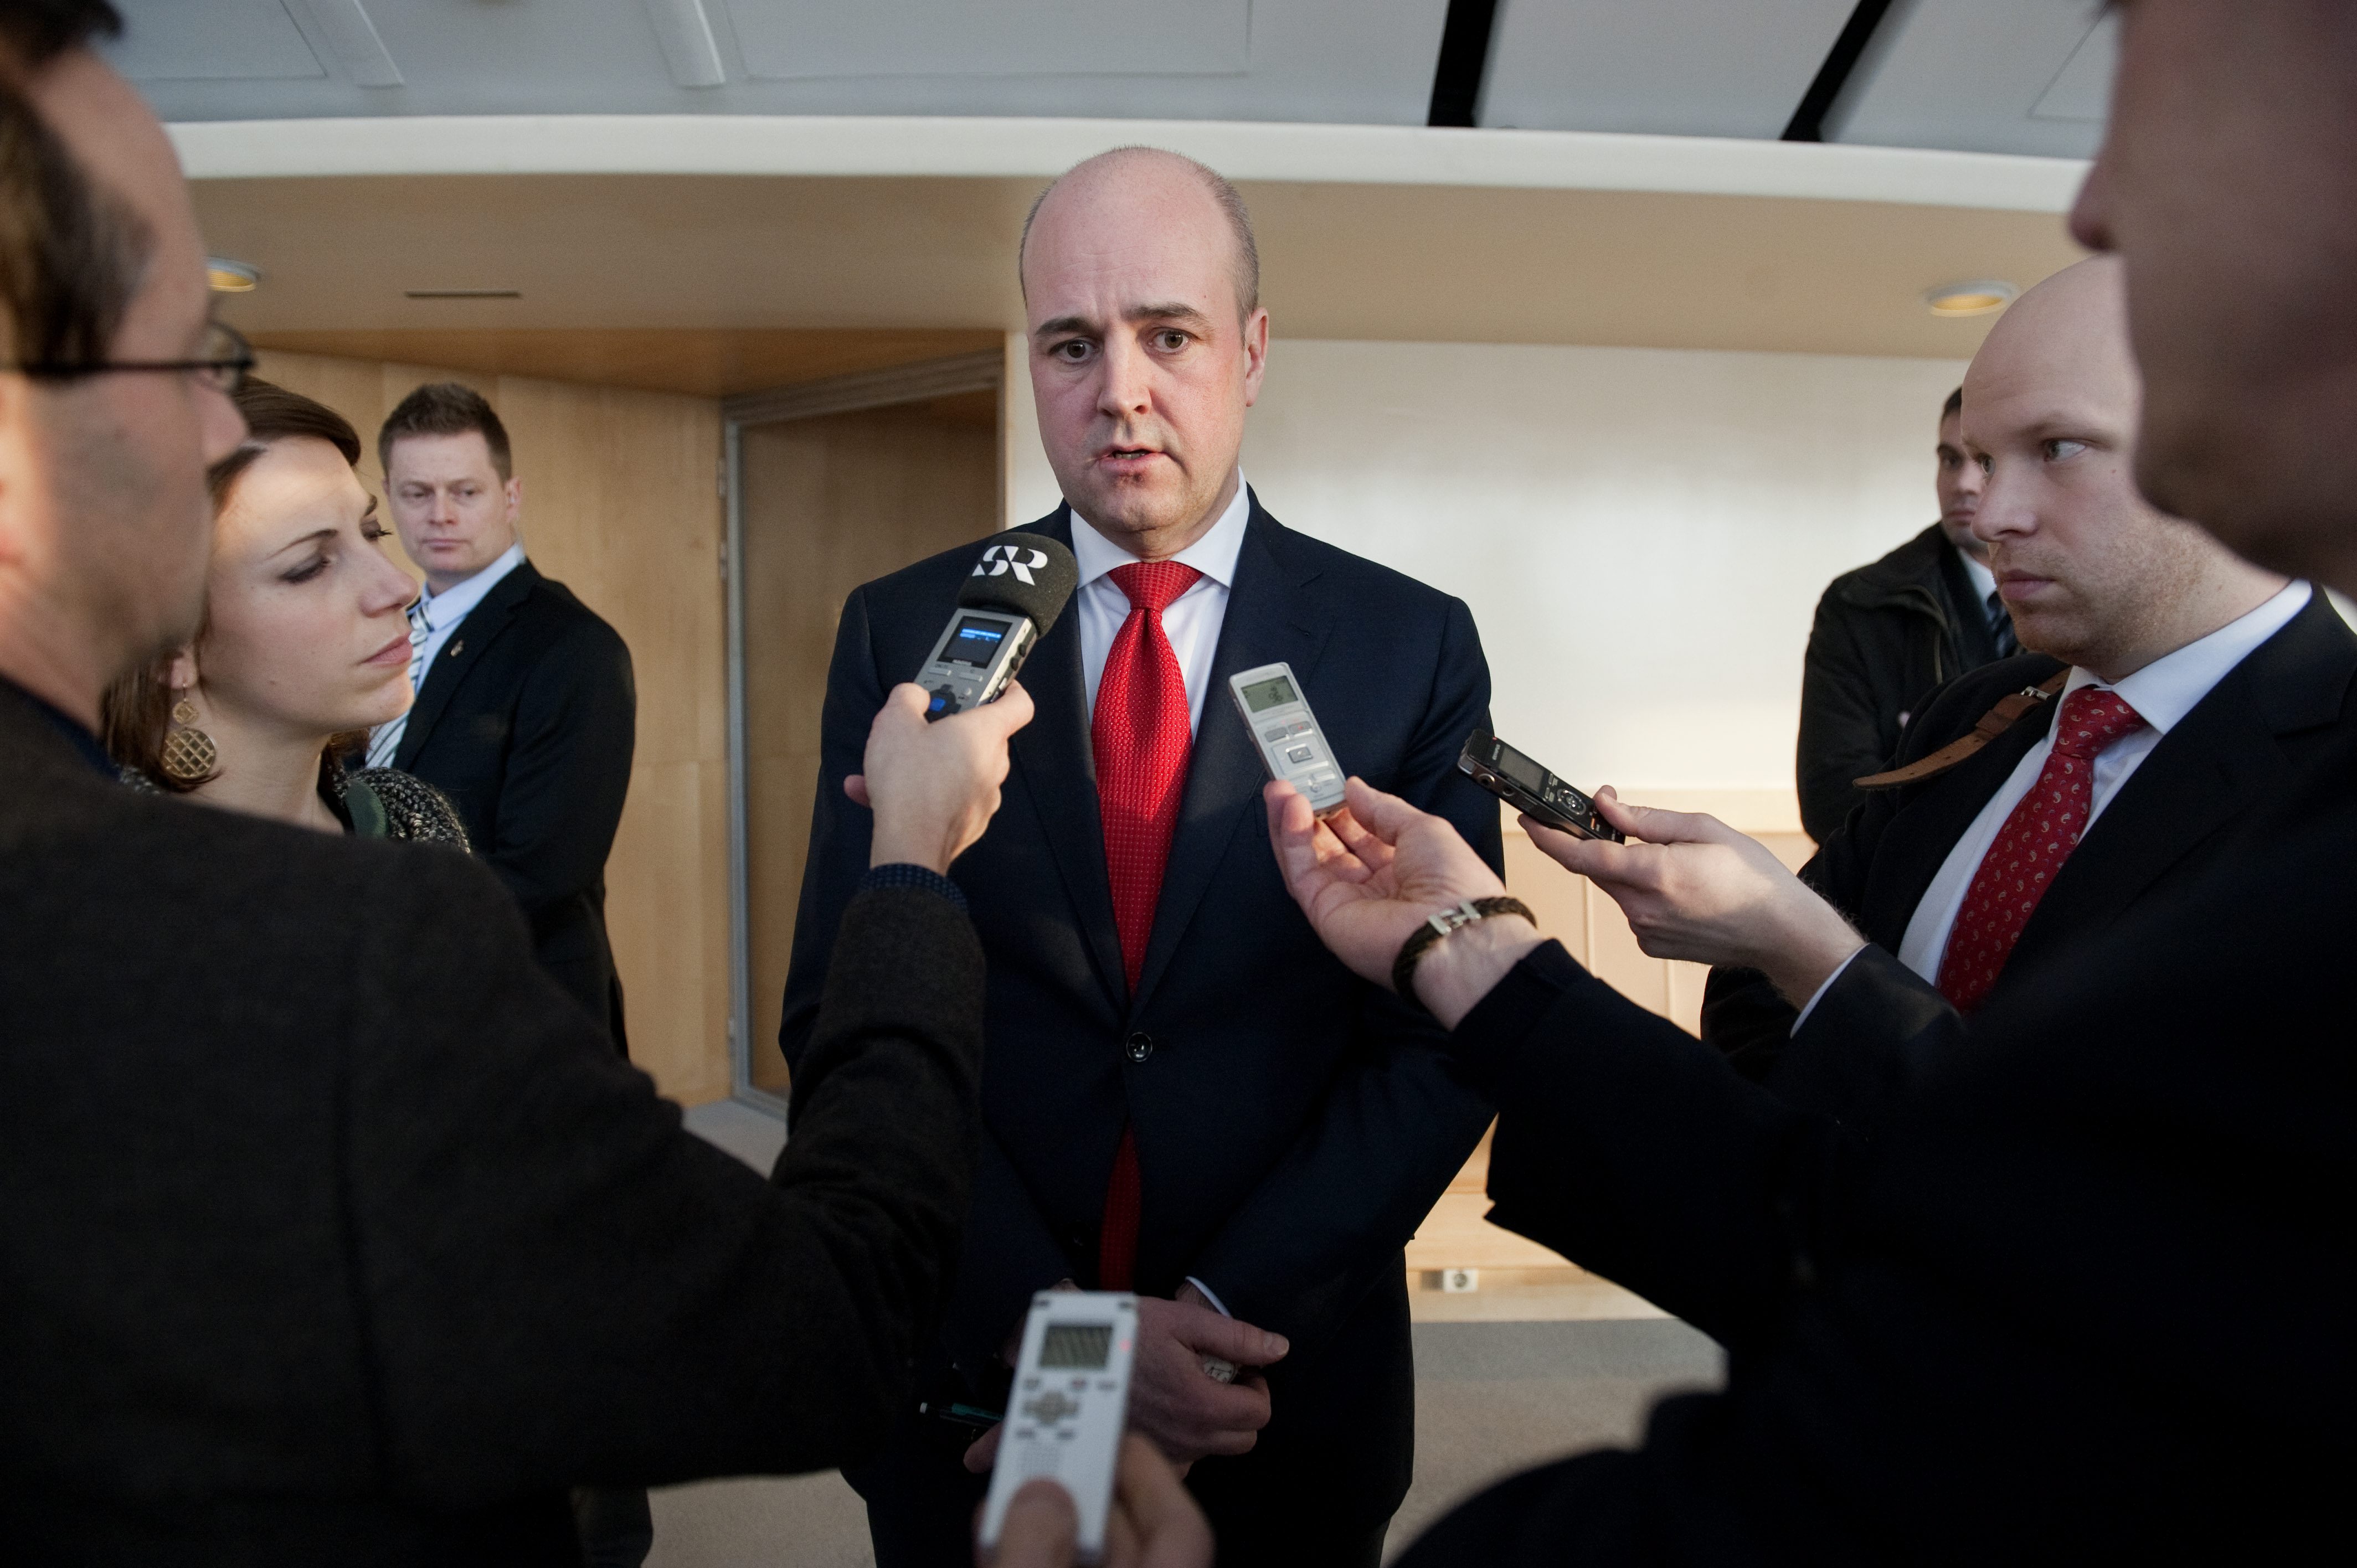 Fredrik Reinfeldts Moderaterna är störst i landet enligt undersökningen - och stödet har ökat jämfört med förra månaden. Från 34,4 procent till 35,8.